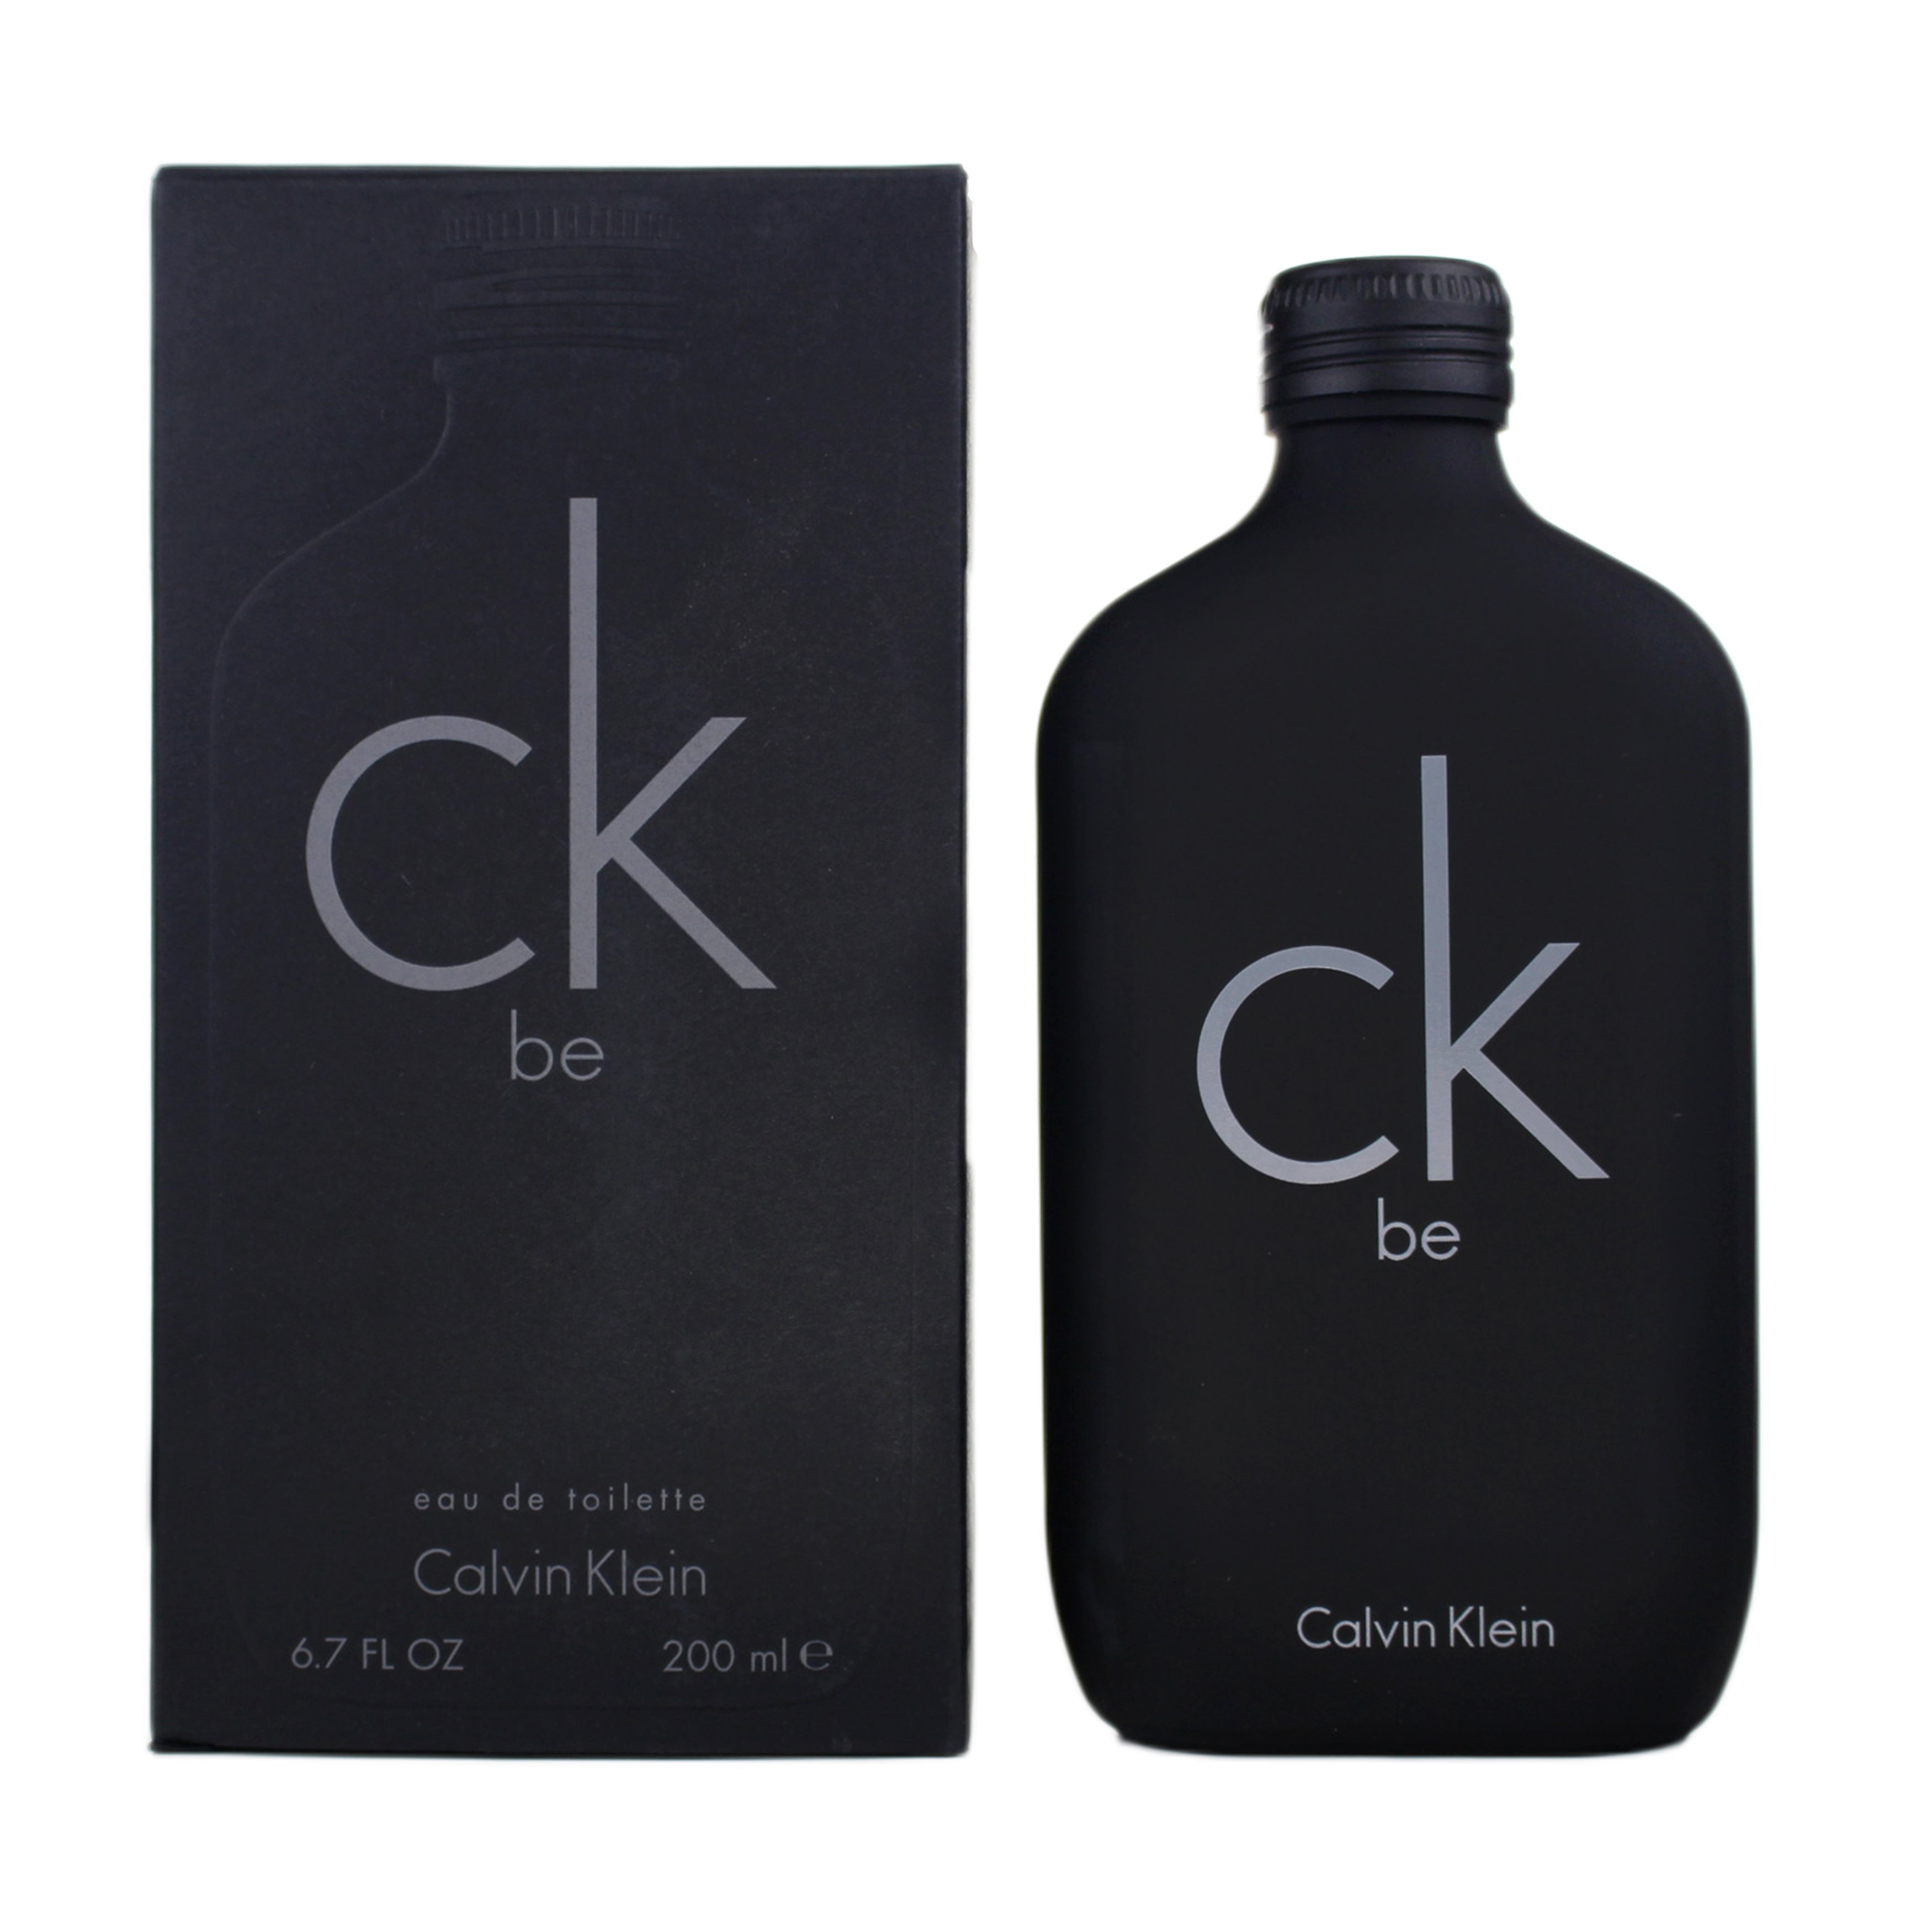 Haiku Proberen Ontslag nemen Ck Be Perfume Eau De Toilette by Calvin Klein | 99Perfume.com